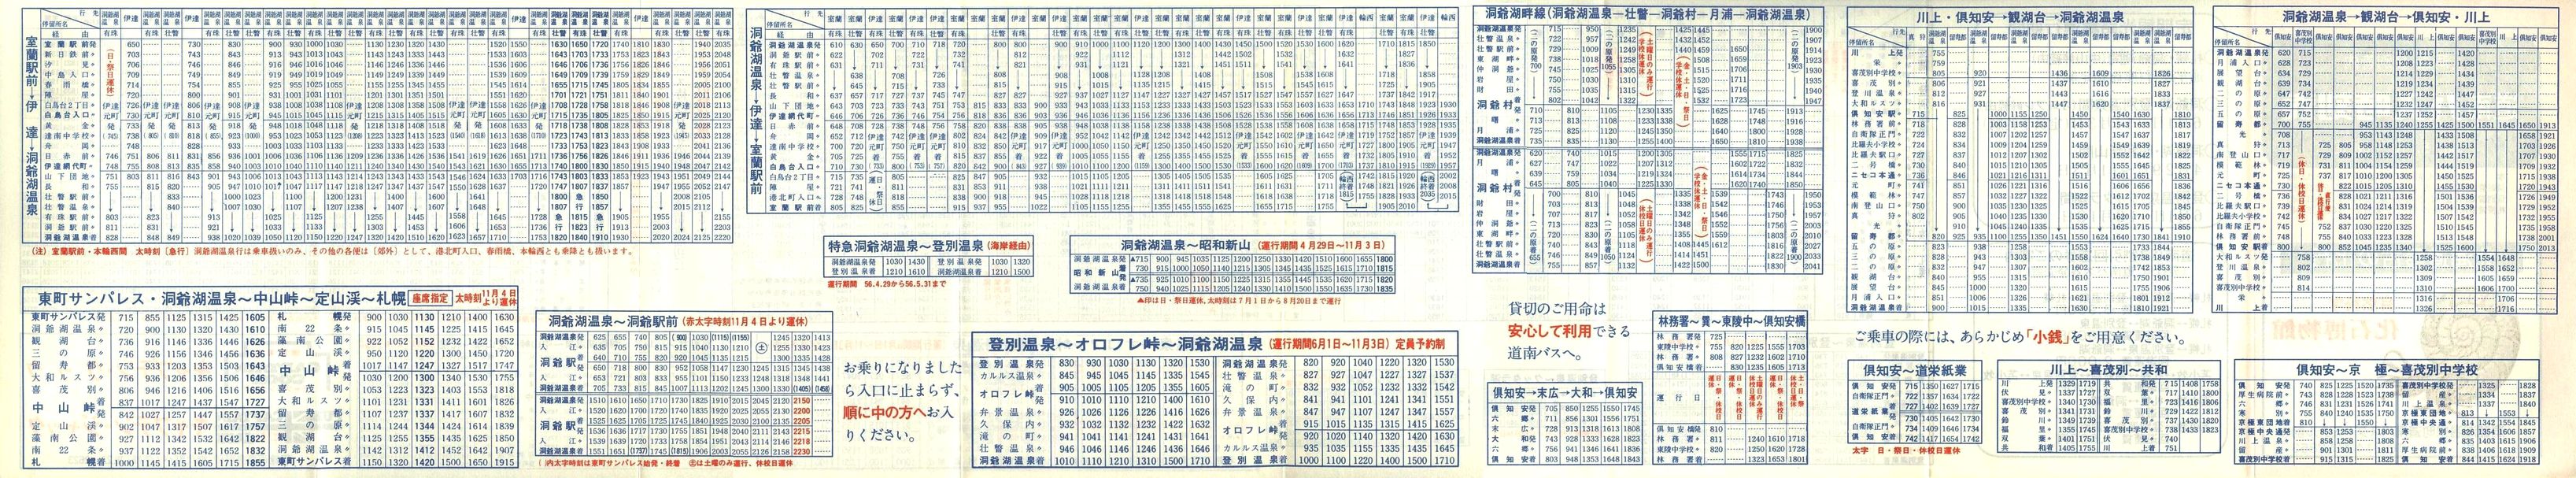 1981-05-10改正_道南バス_洞爺・登別管内時刻表裏面